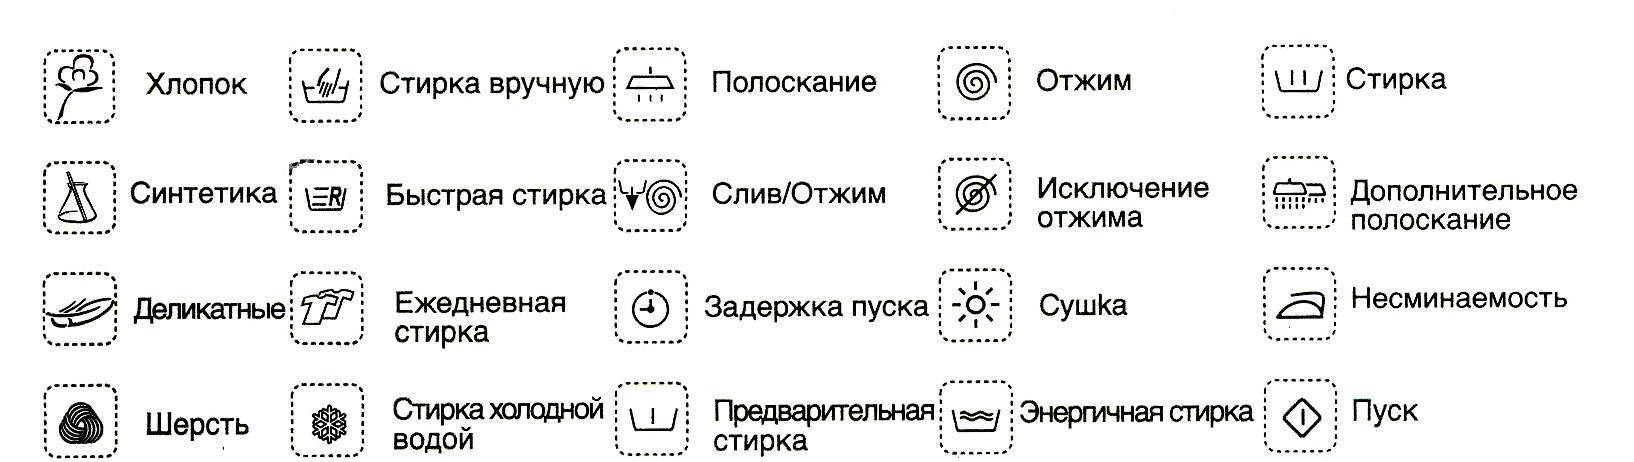 Расшифровка значков на автоматических стиральных машинах